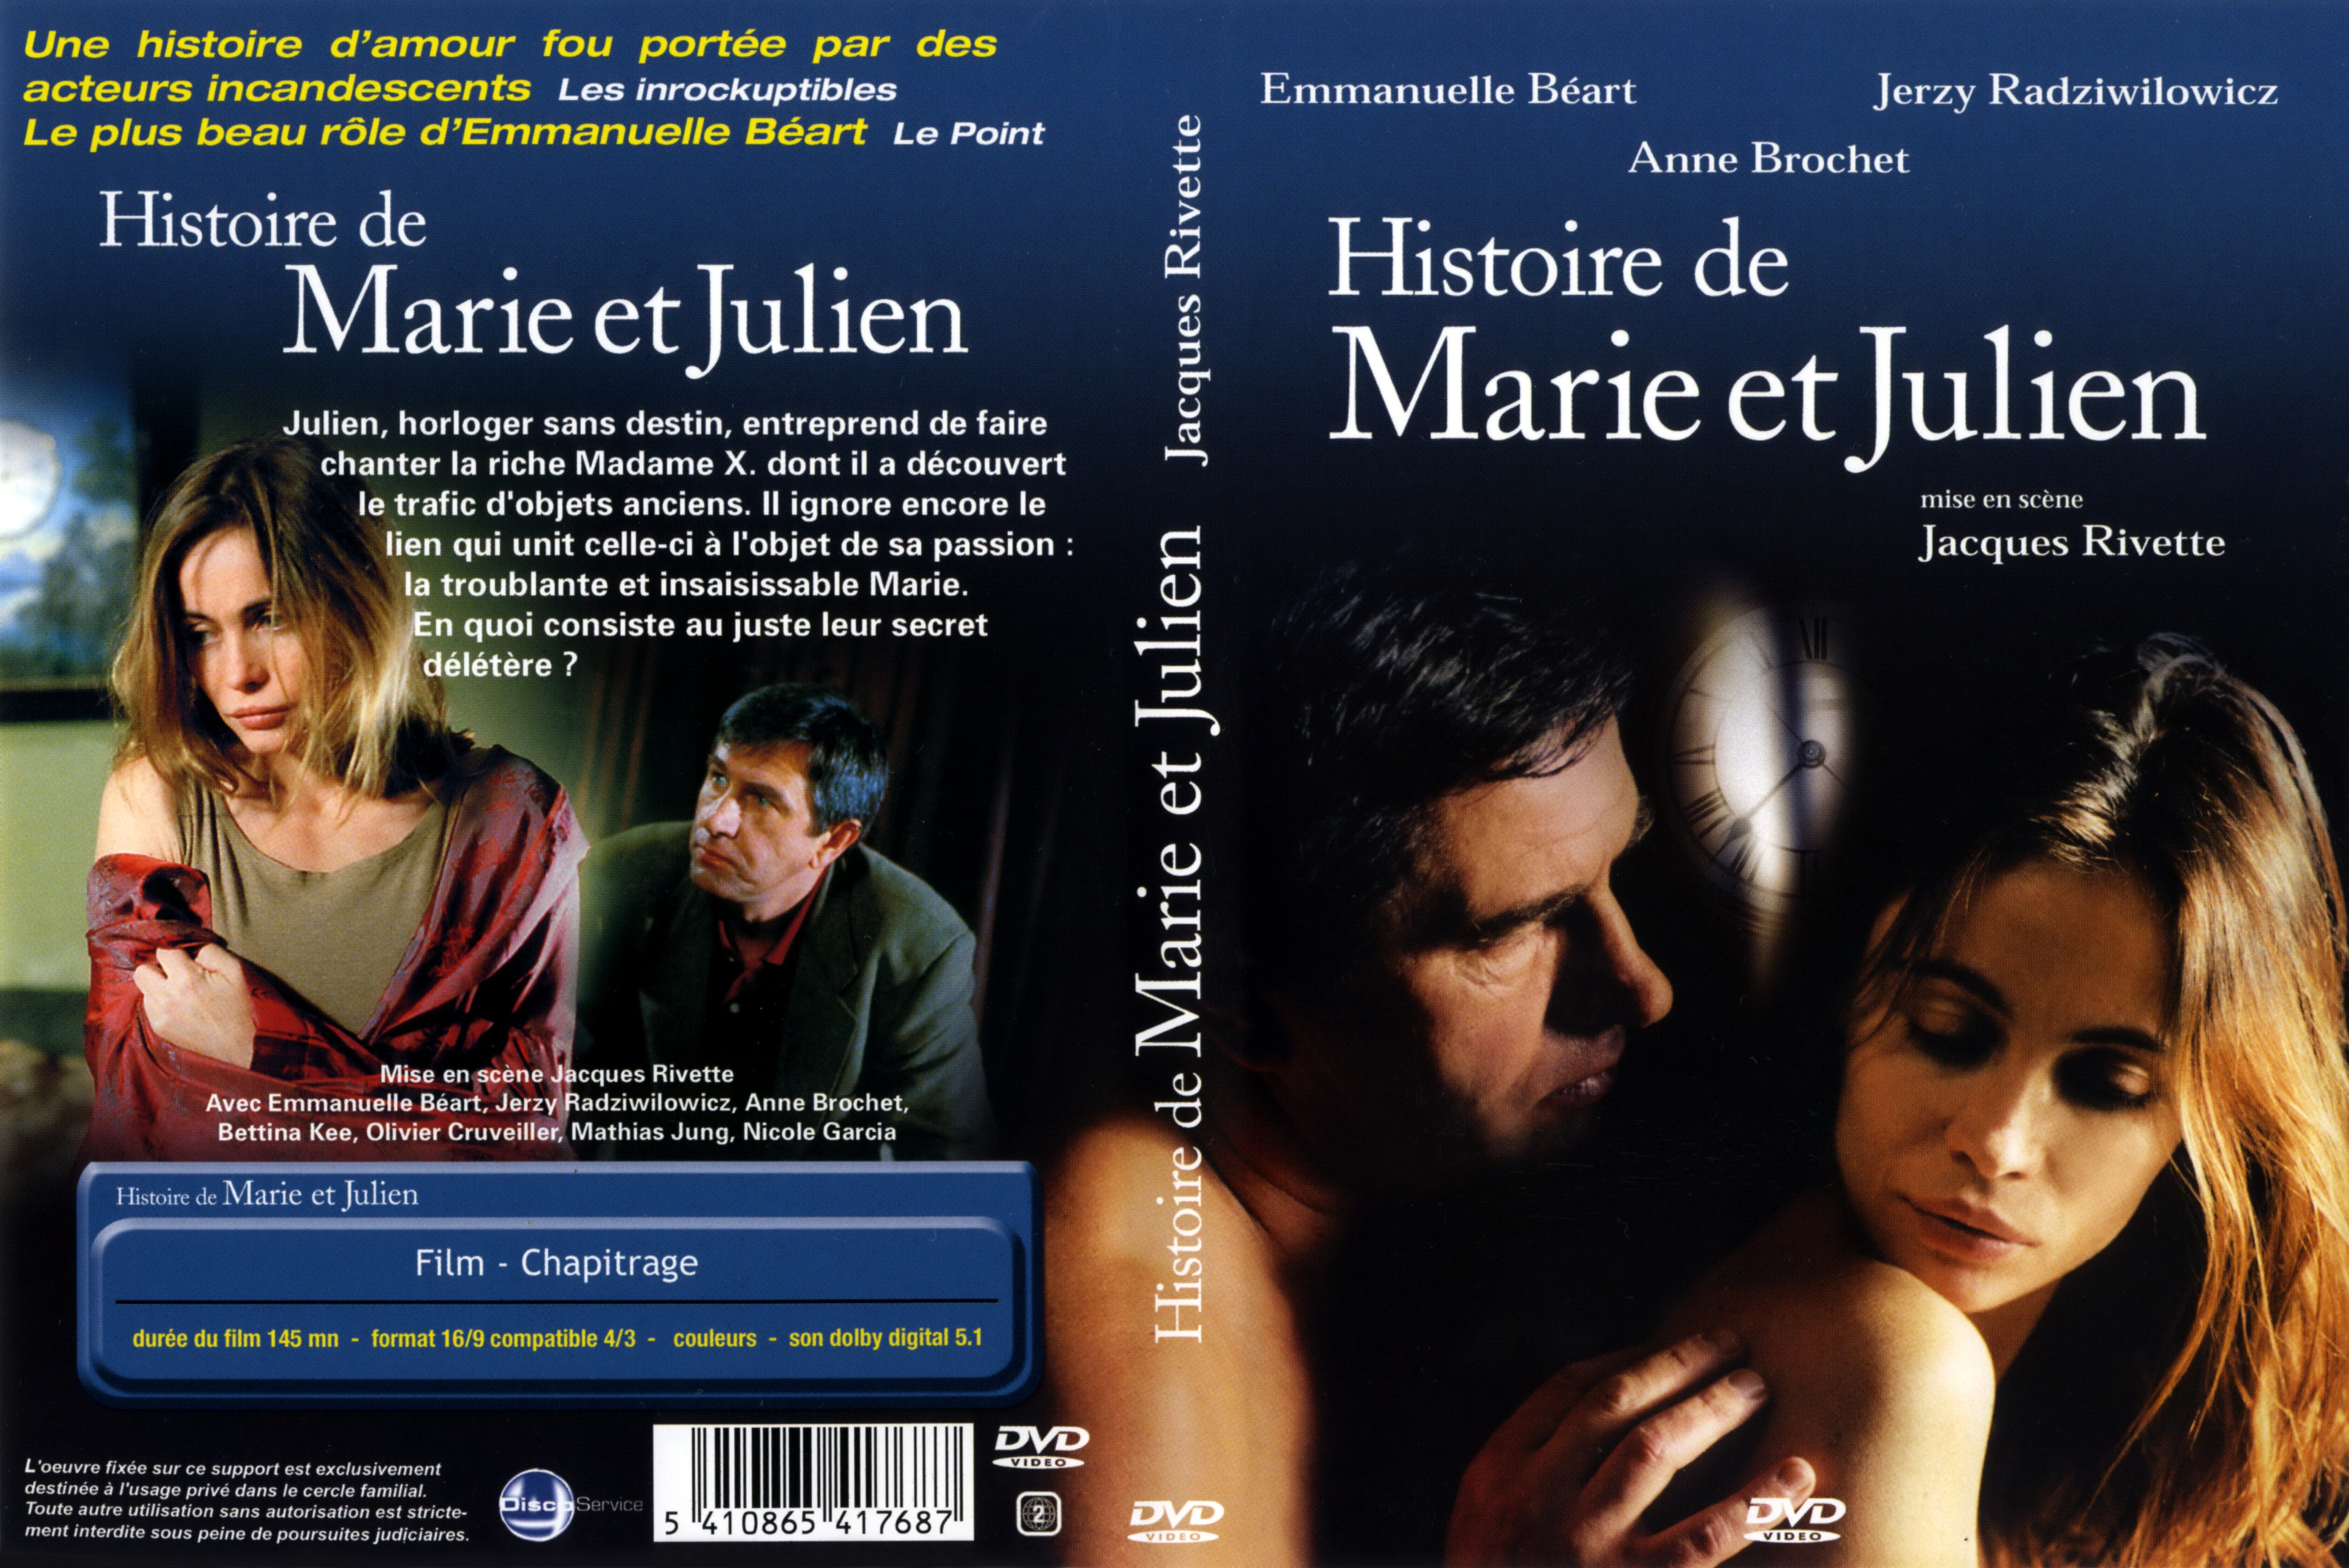 Jaquette DVD Histoire de Marie et Julien